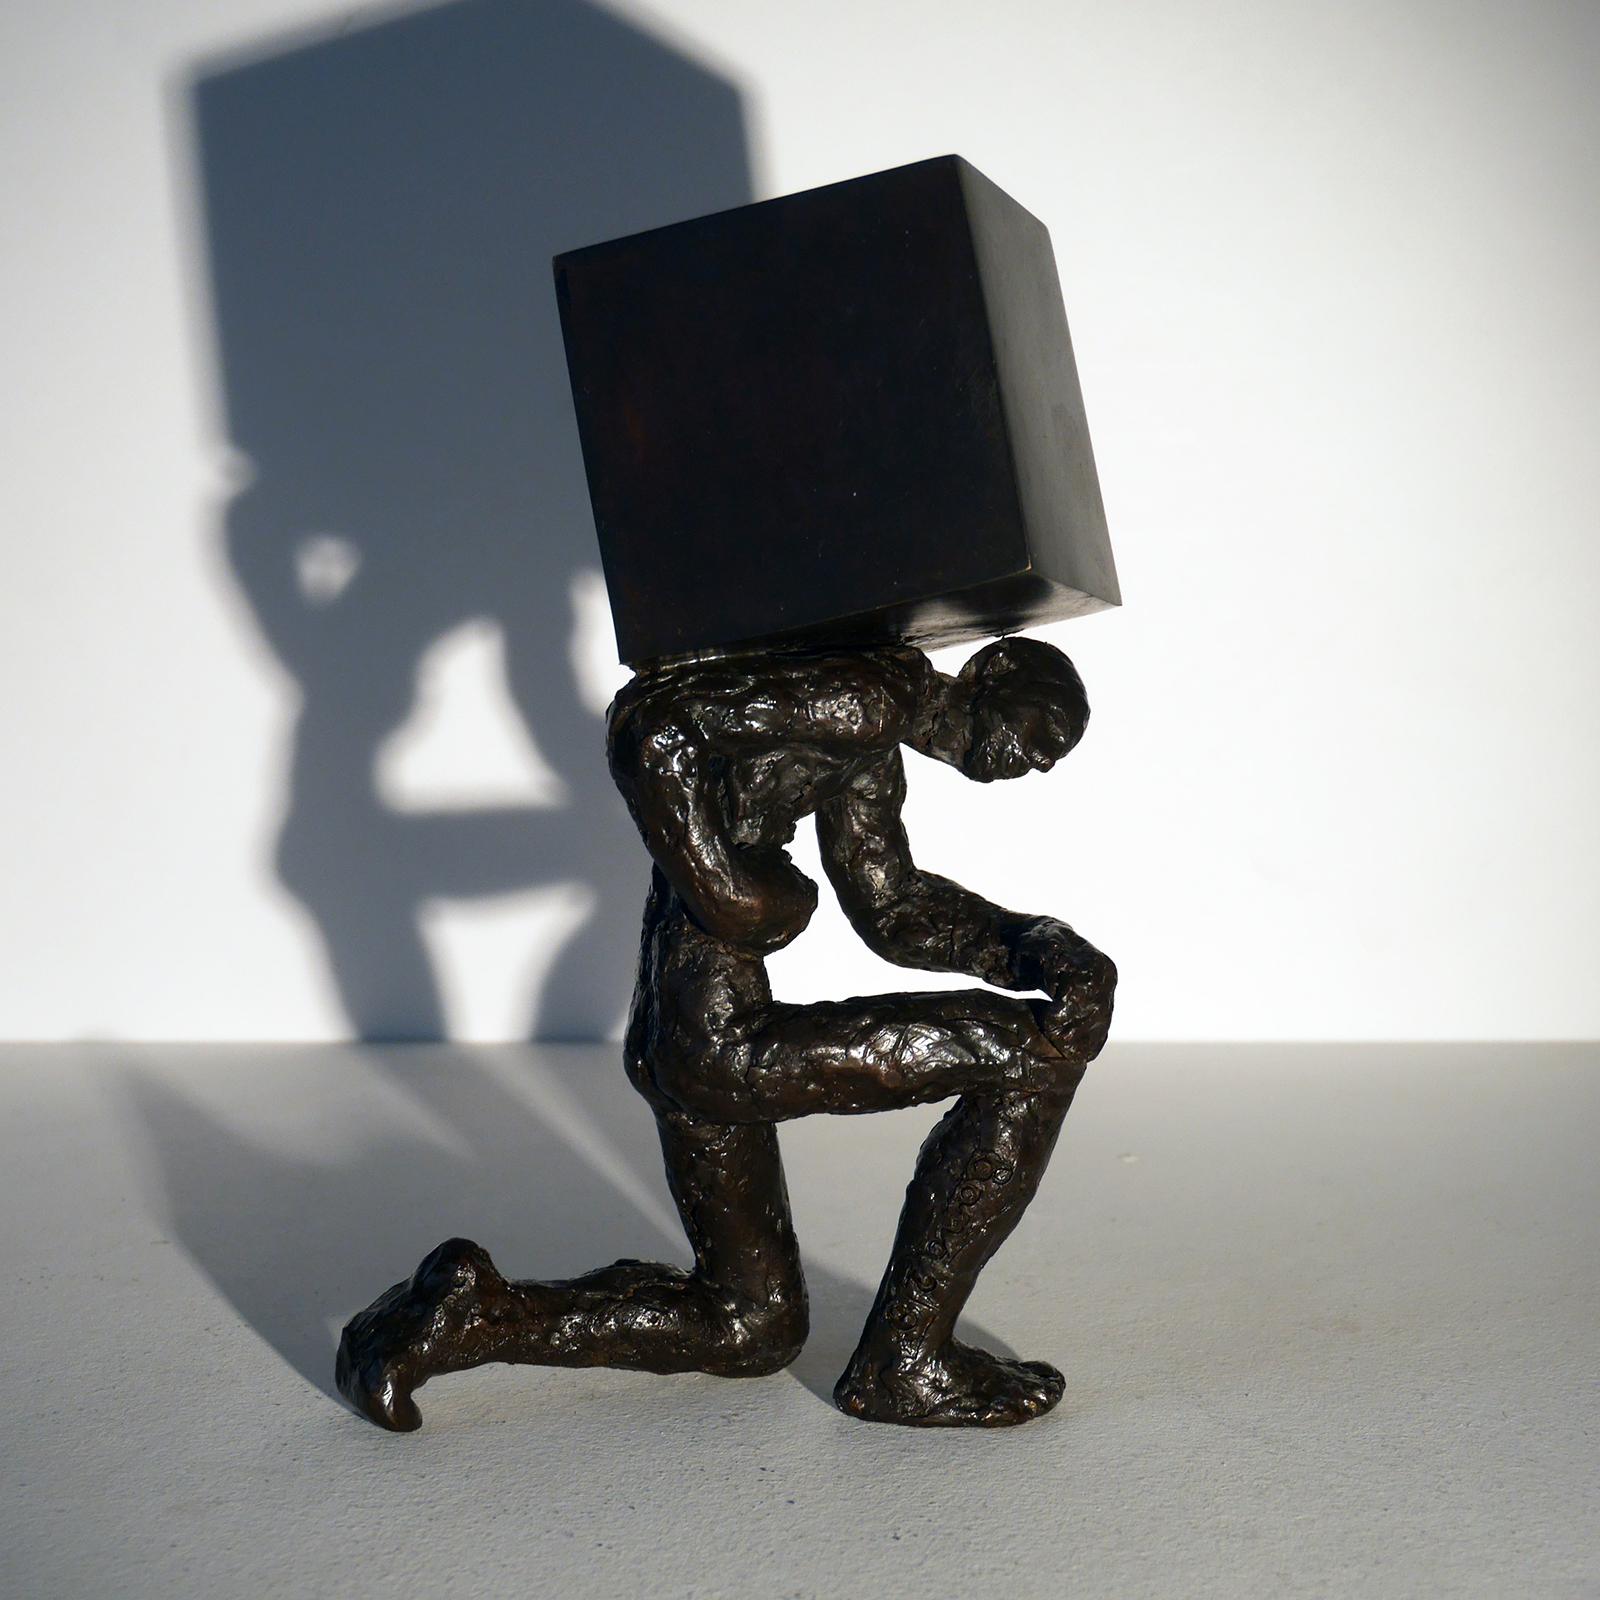 Le porteur de pierre bronze figurative sculpture, man holding a stone by M. Banq - Sculpture by Maguy Banq